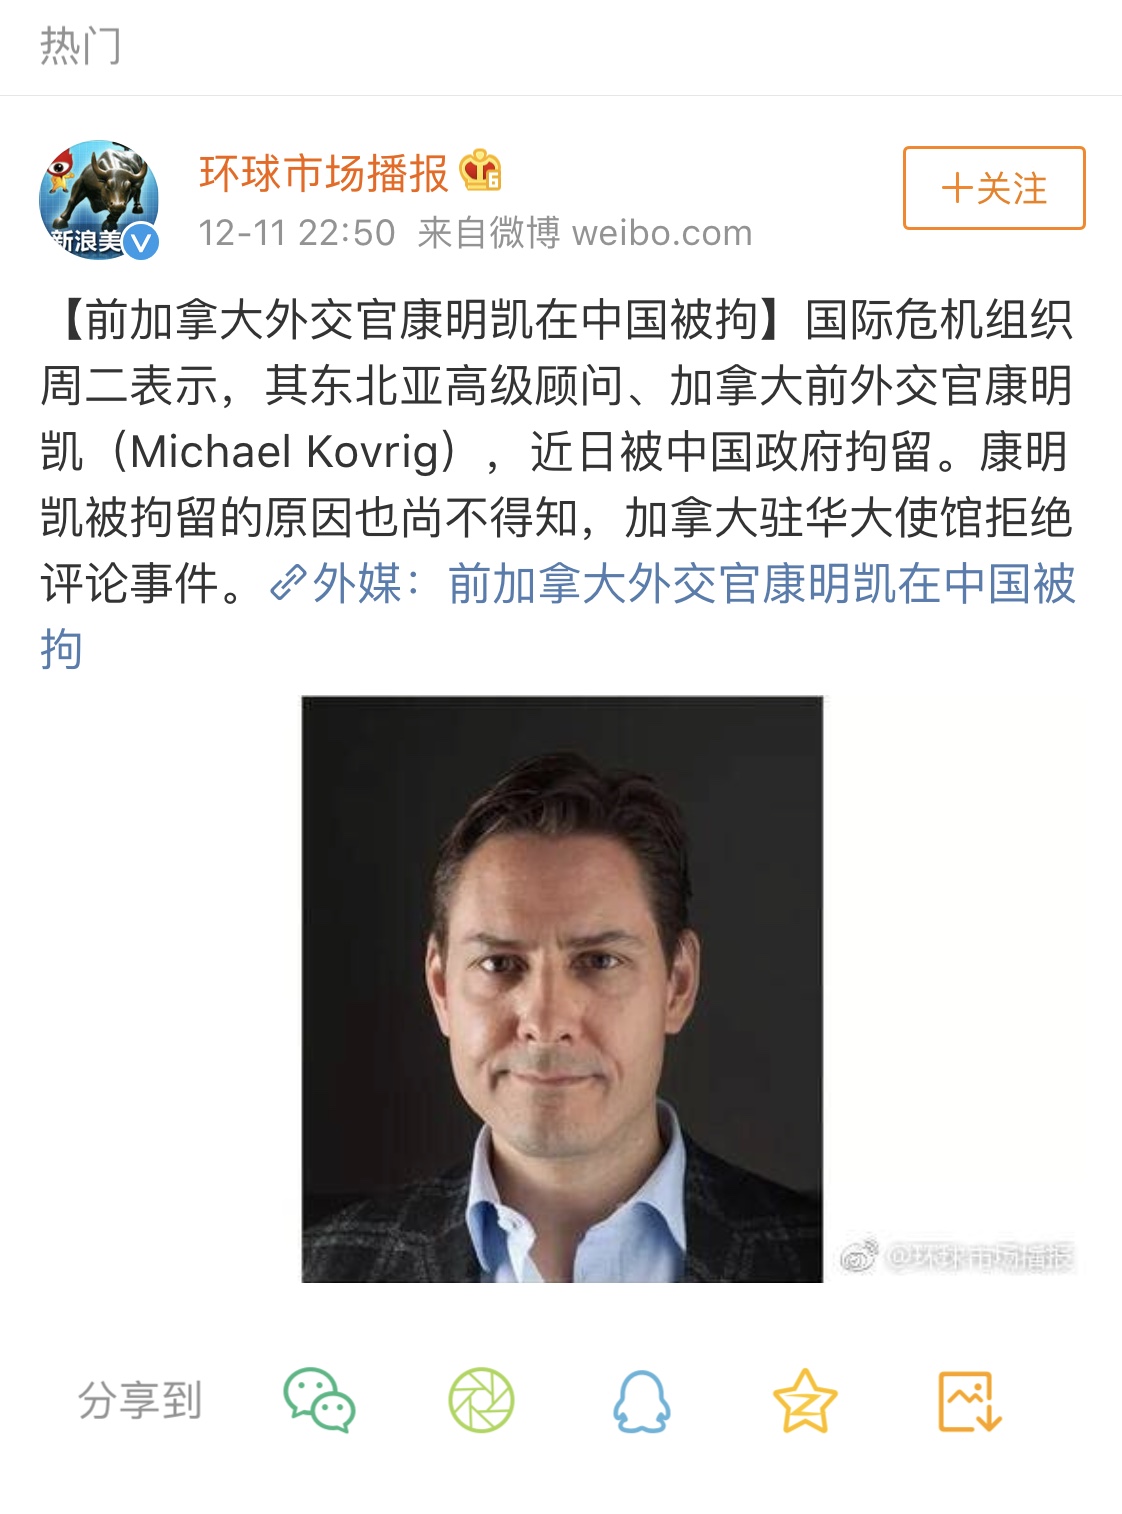 加拿大前外交官康明凯被中国拘留了评论里都是